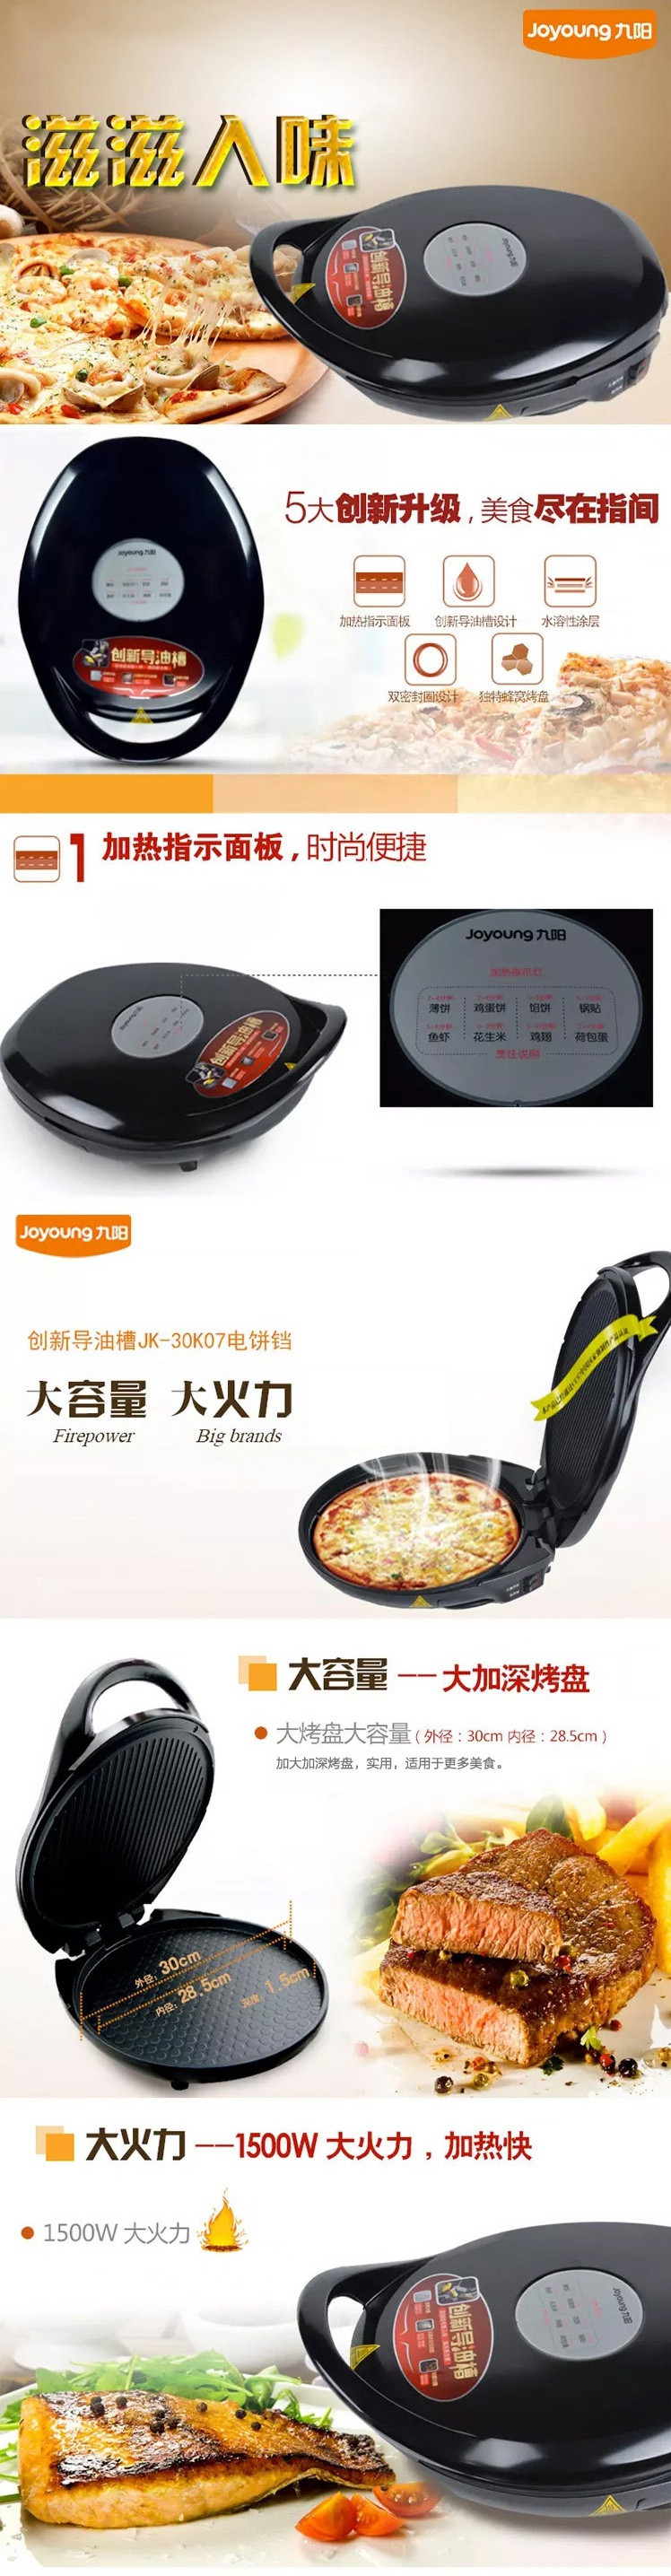 九阳电饼铛JK-30K07 多功能家用煎烤机双面悬浮烙饼机